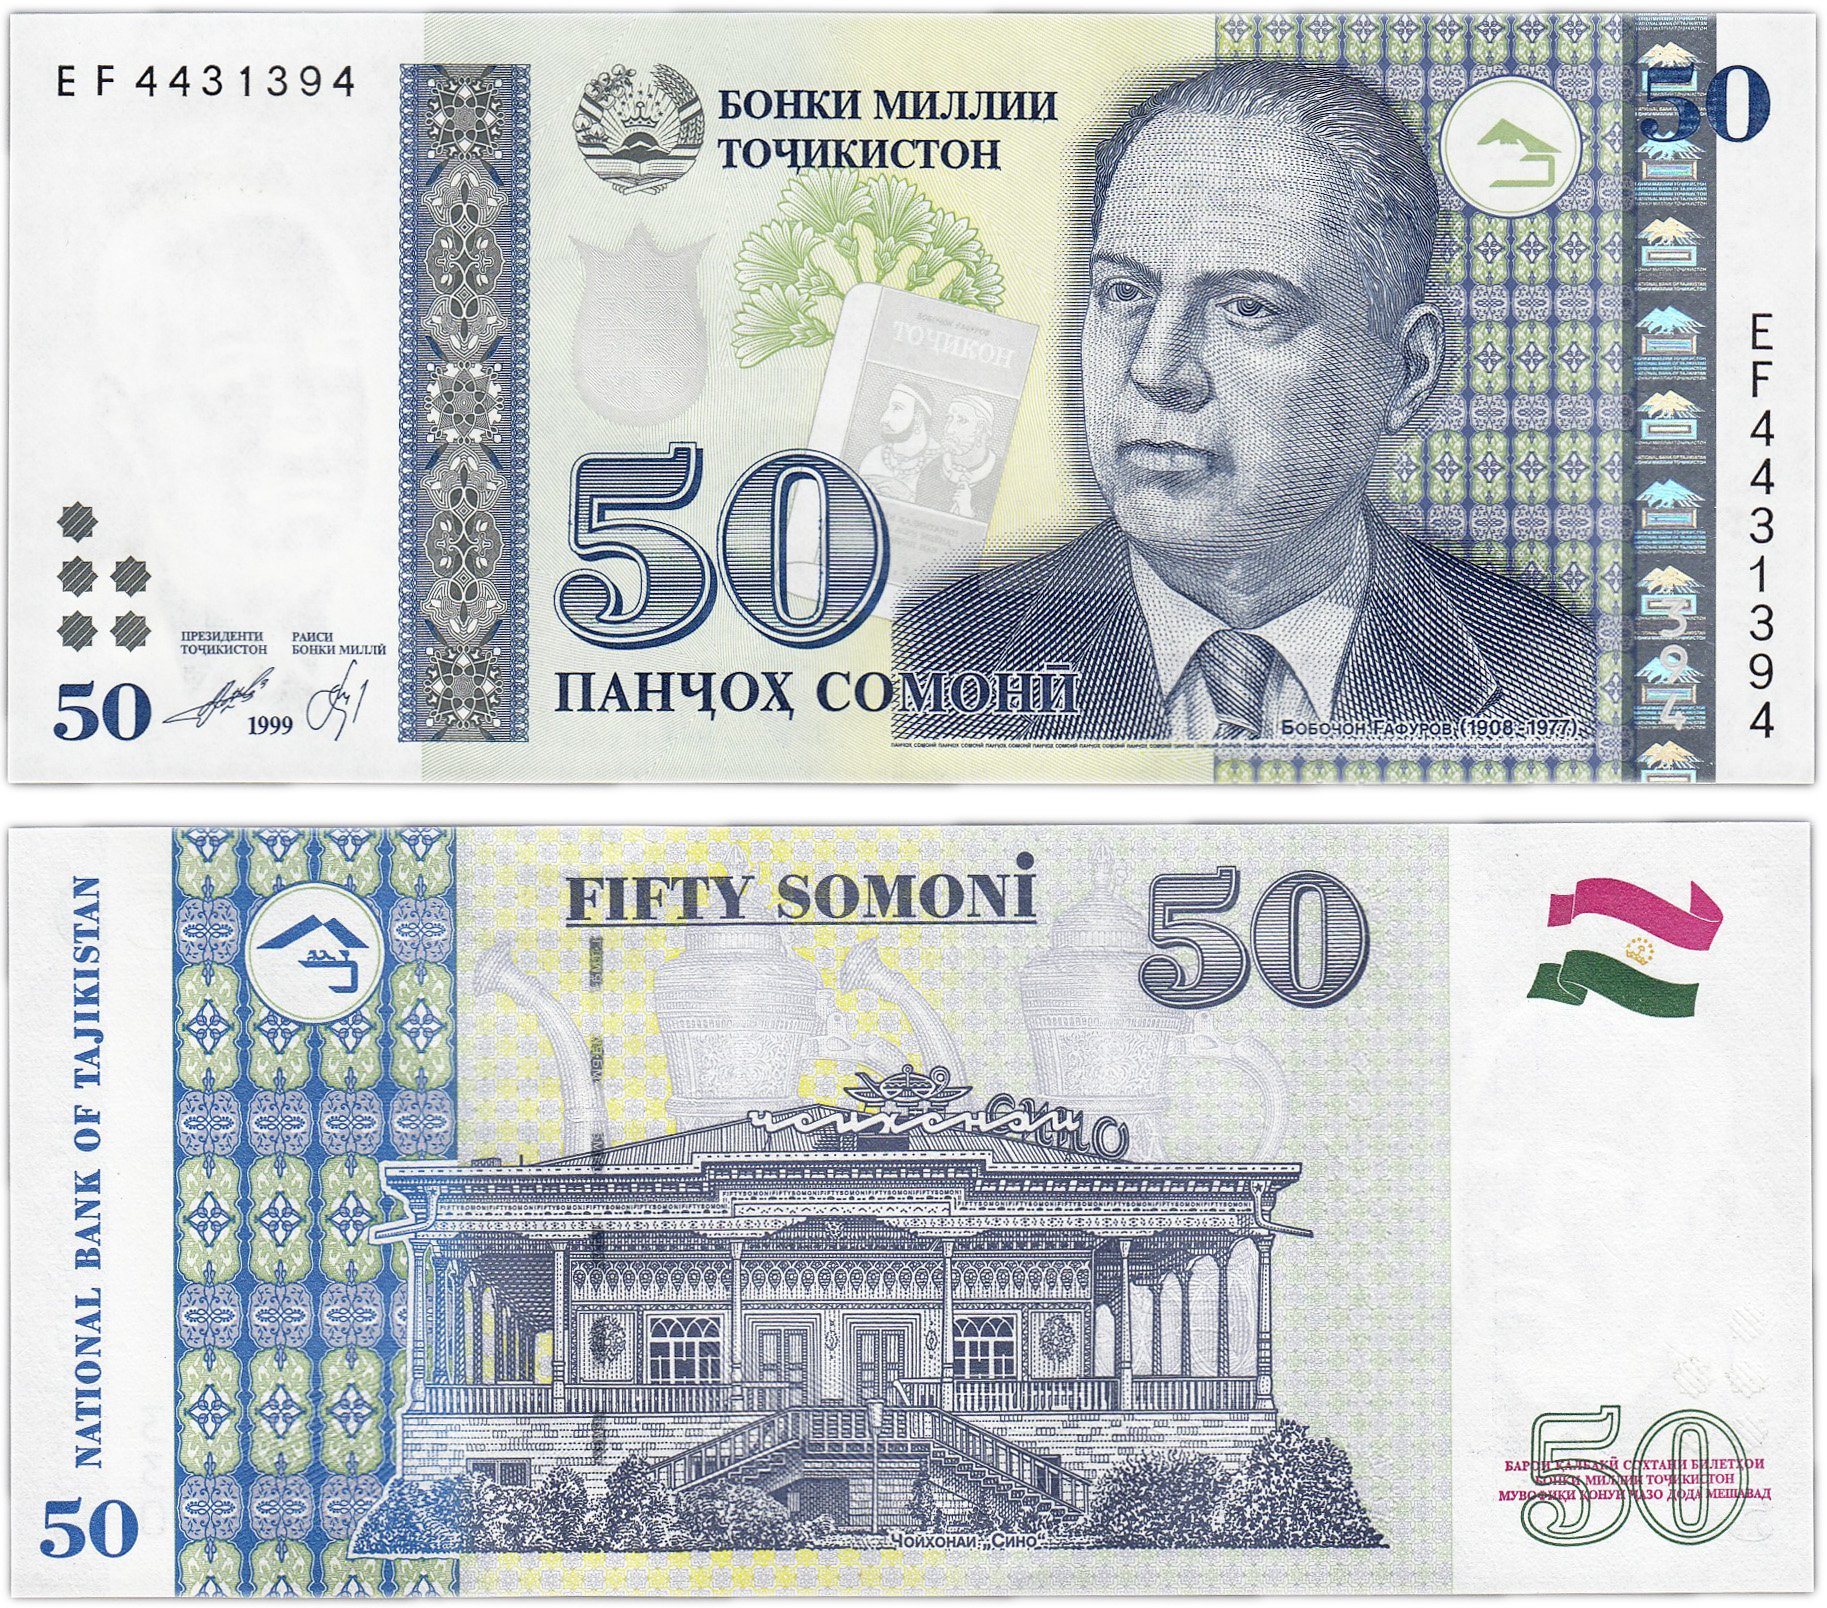 500 таджикски. 100 Сомони 1999. Таджикский купюры 500 Сомони. Таджикистан банкнота 20 Сомони 1999. Деньги Таджикистана 500 Сомони.